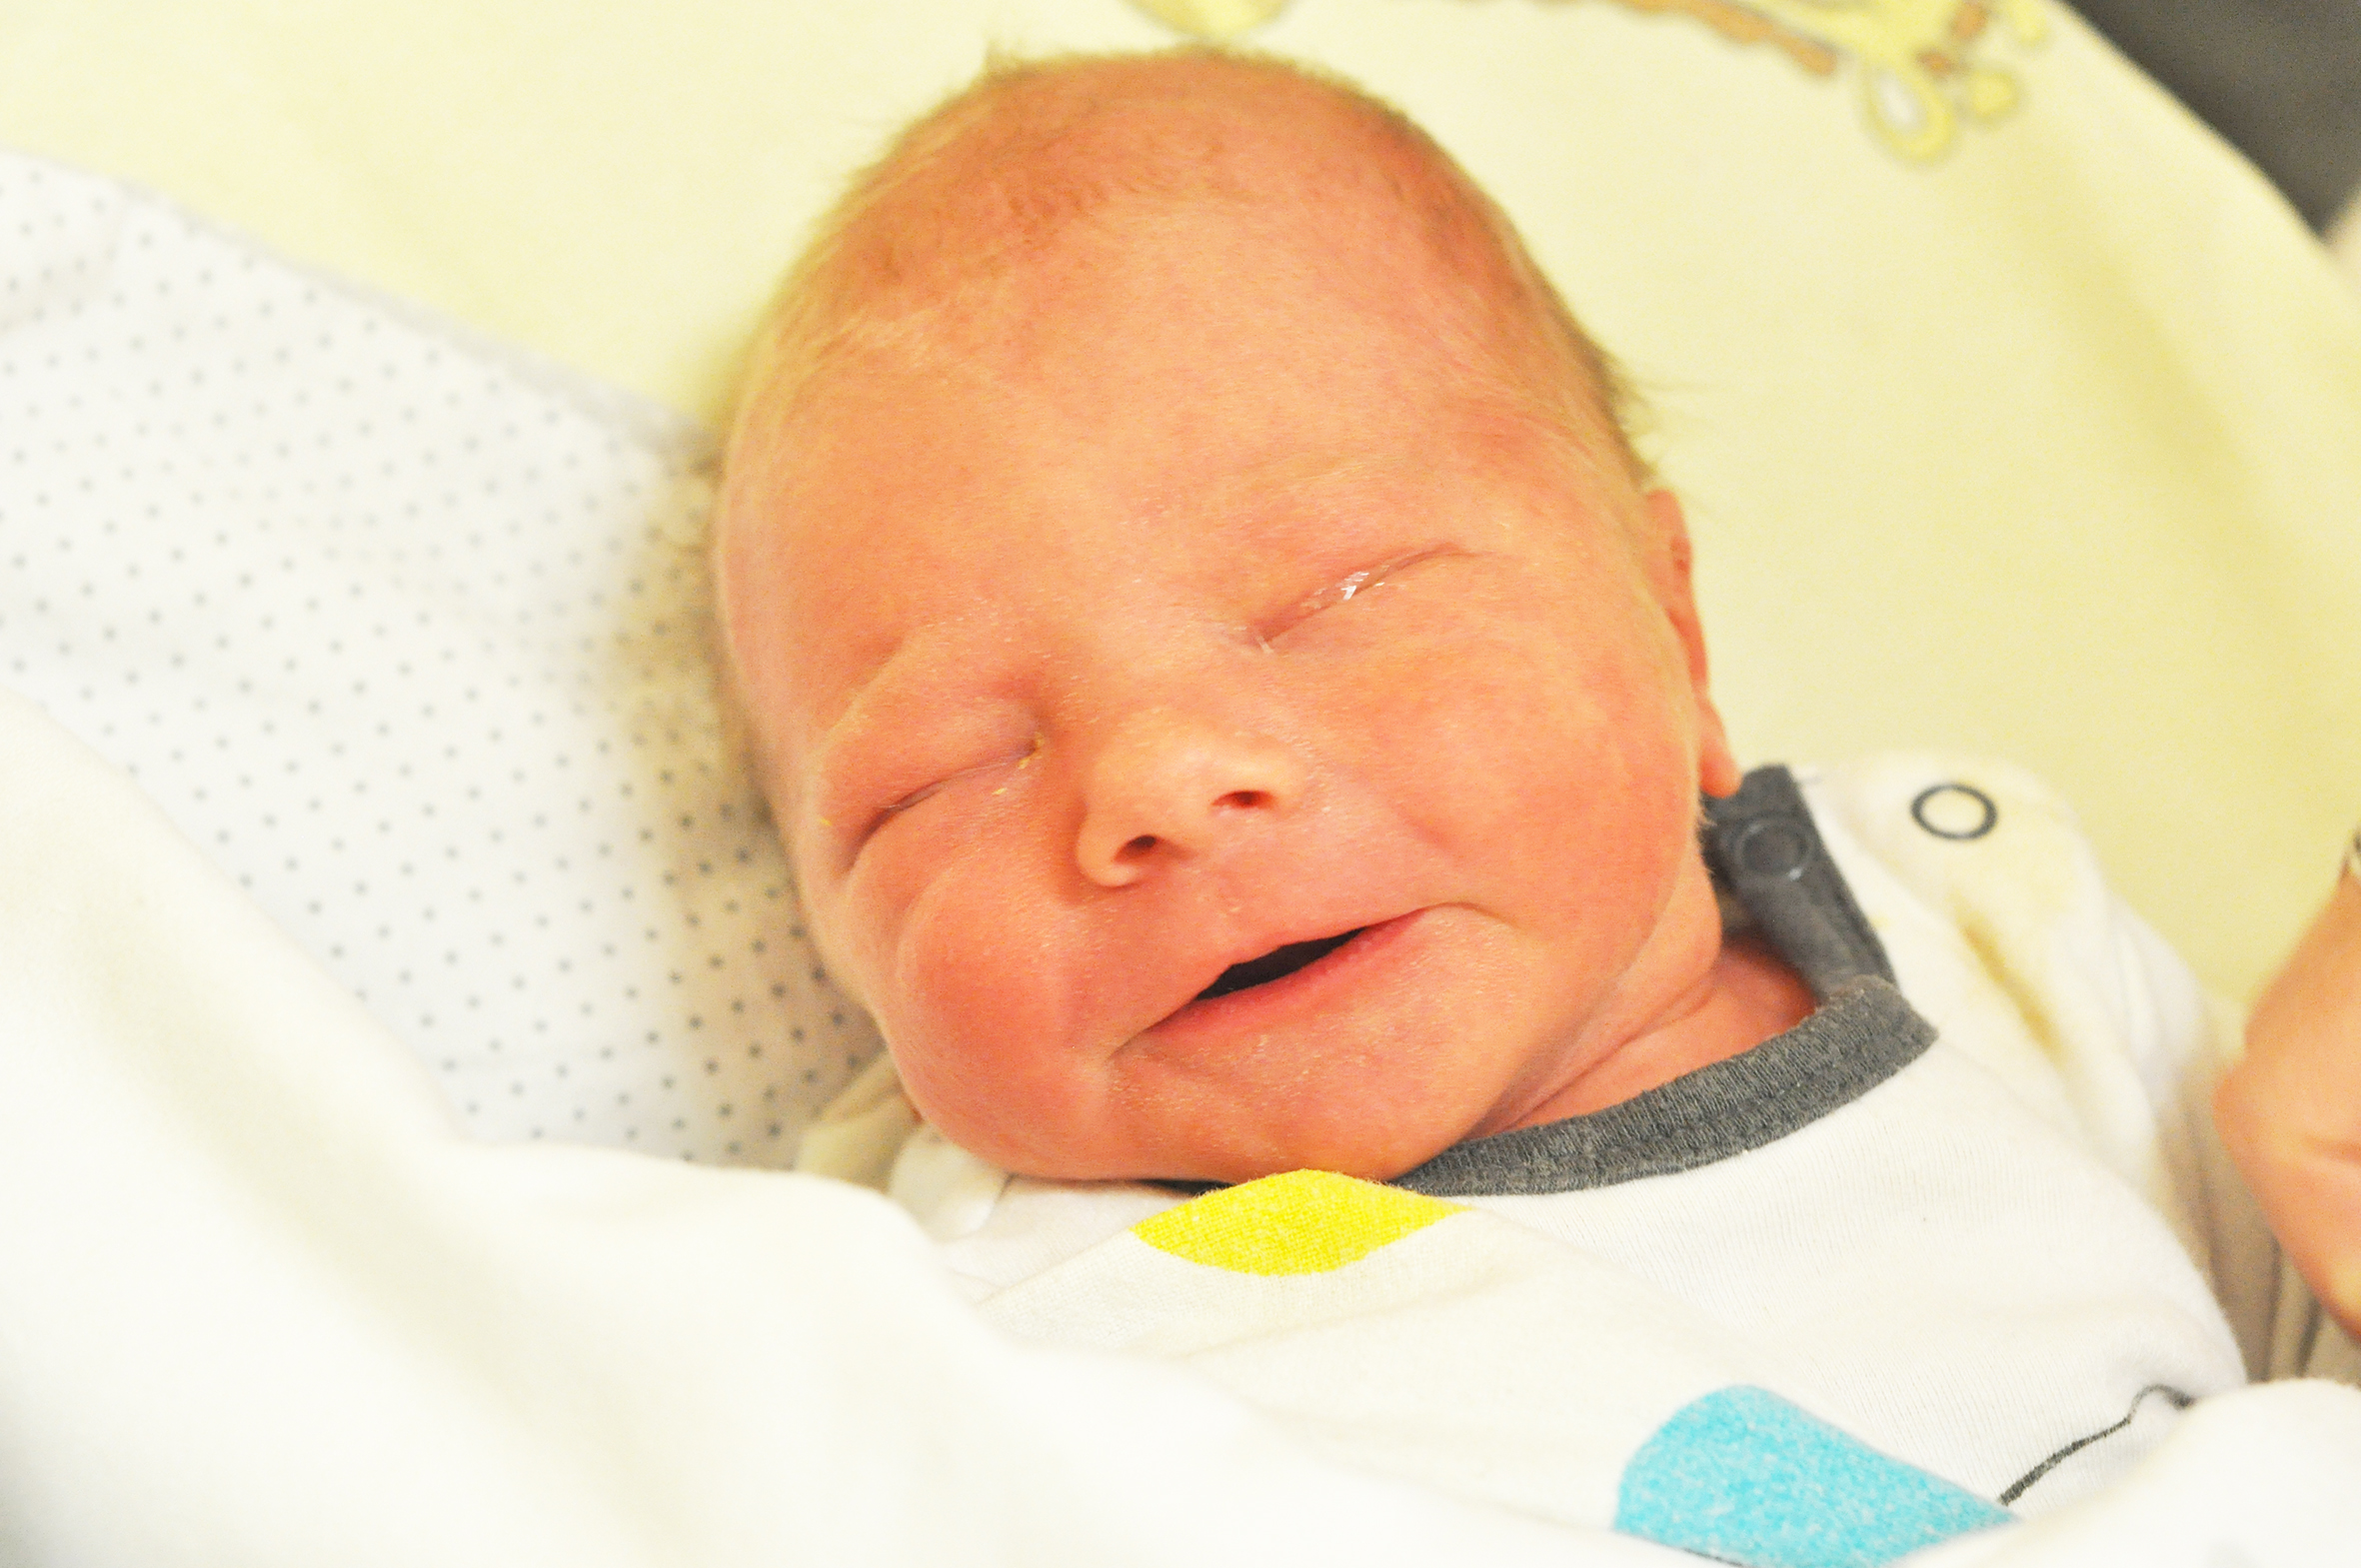 Aleksander Mika przywitał świat 25 listopada o 5.10. Pierwsze dziecko Anety i Adriana ważyło wtedy 3010 g i mierzyło 50 cm. Rodzina mieszka w Raciborzu.